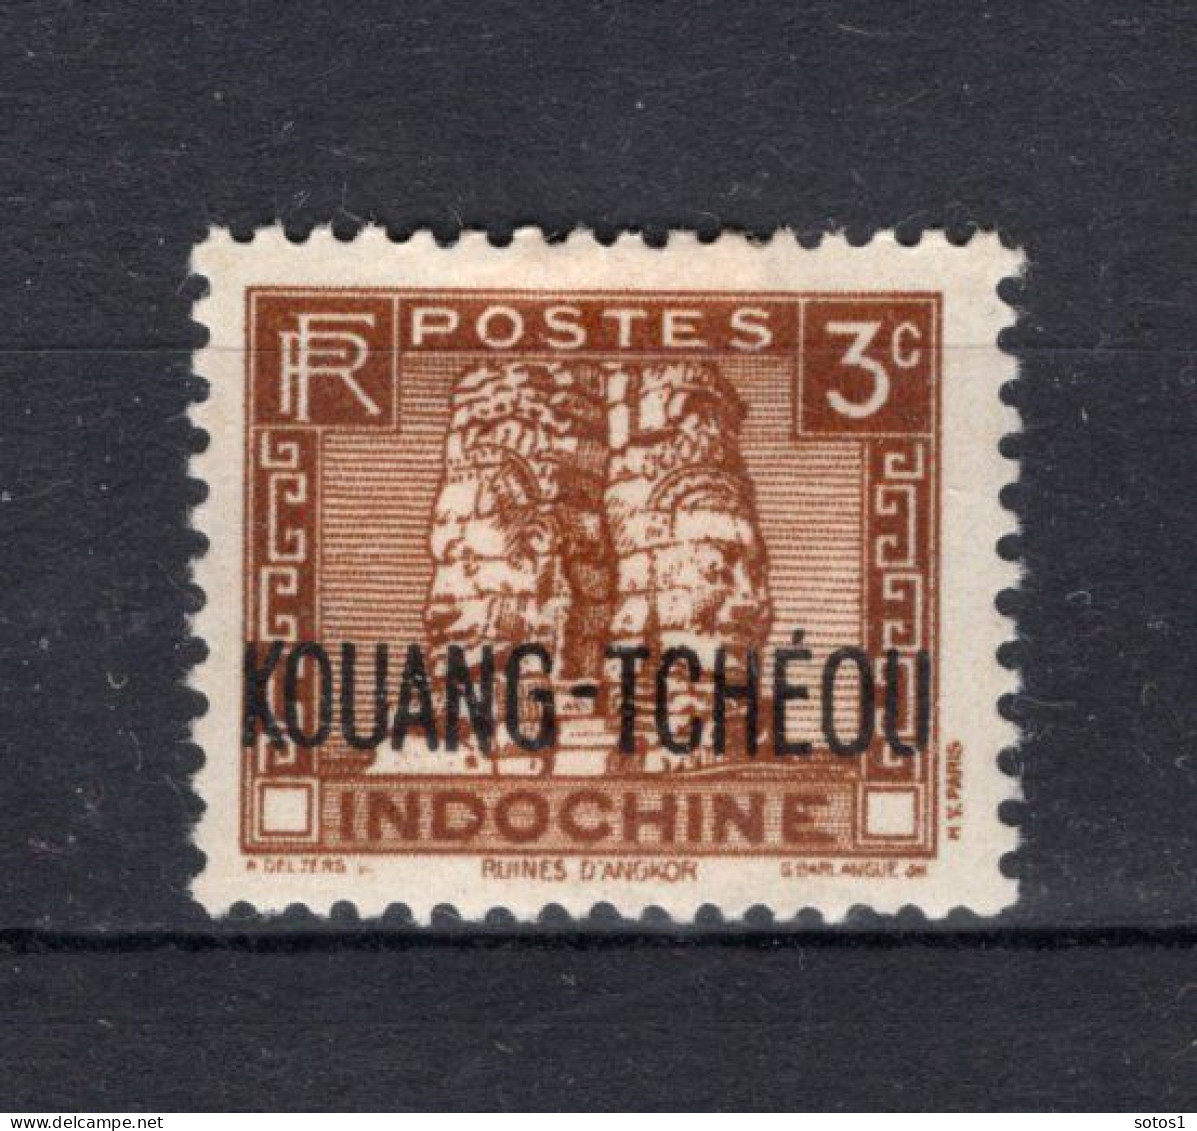 KOUANG-TCHEOU Yt. 125 MH 1941 - Neufs